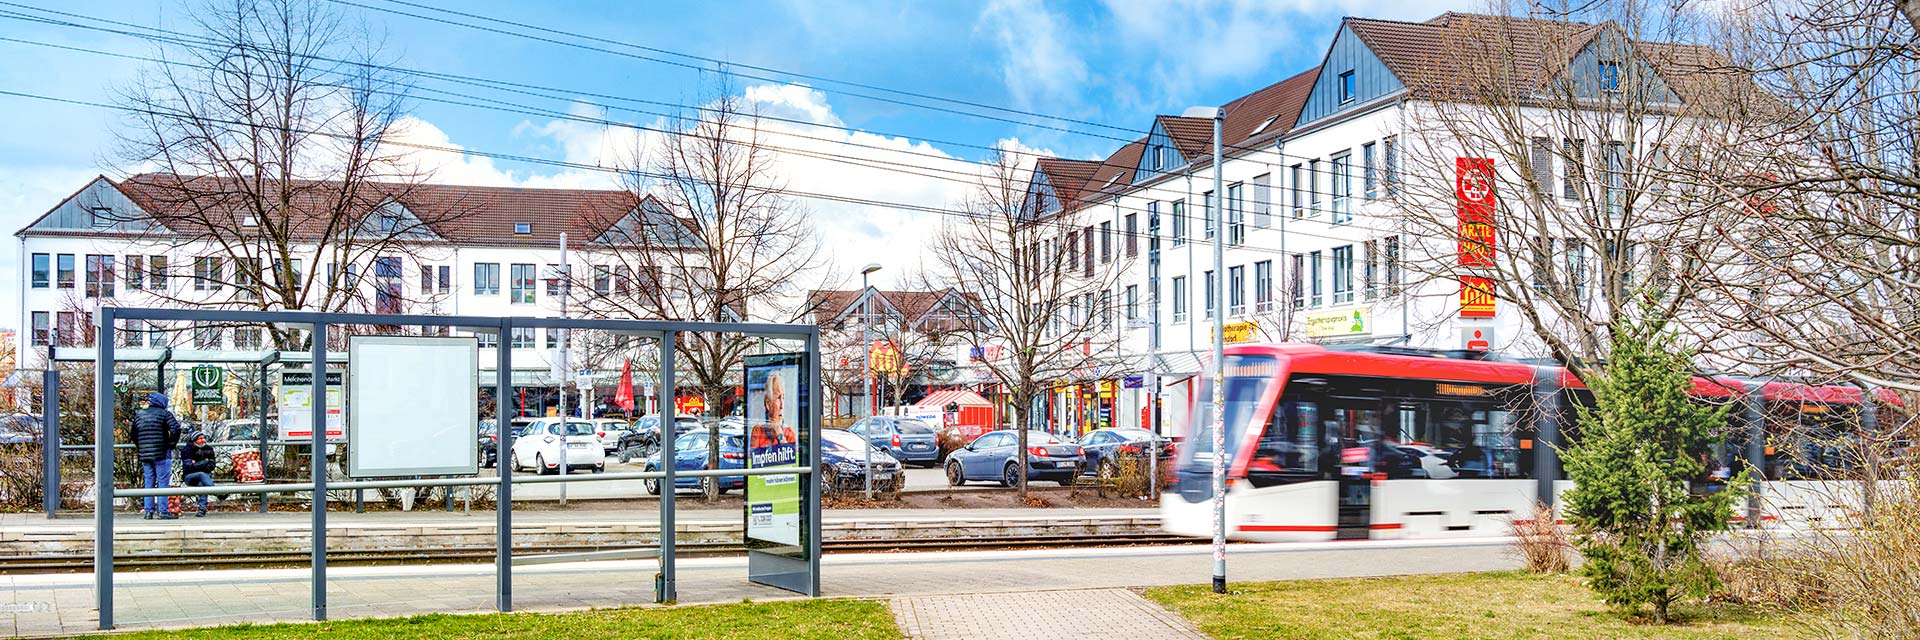 Sehr günstige Verkehrsanbindung - Straßenbahnhaltestelle "Melchendorfer Markt"